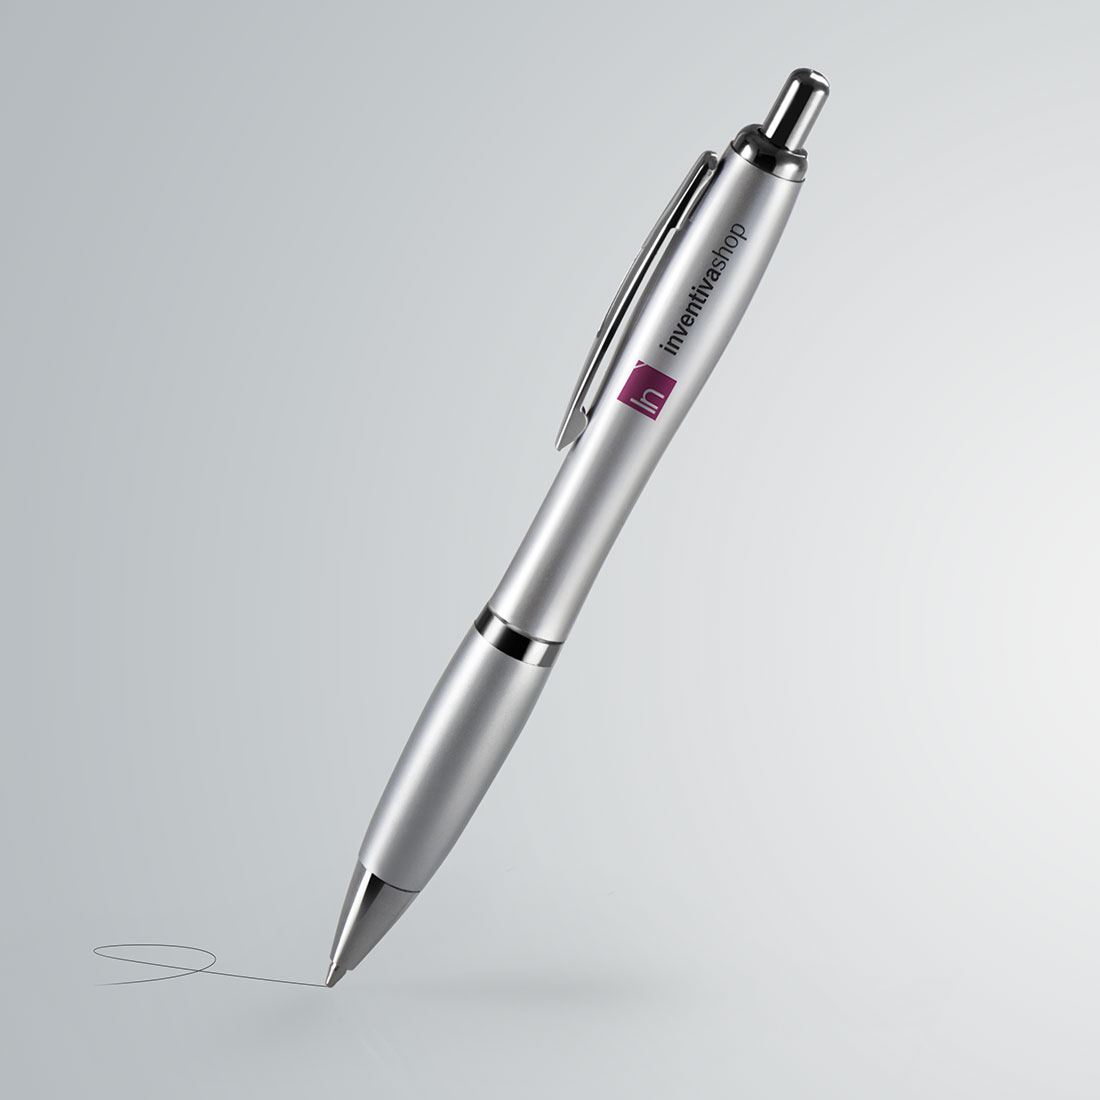 Come creare penne personalizzate con nome: idea innovative.